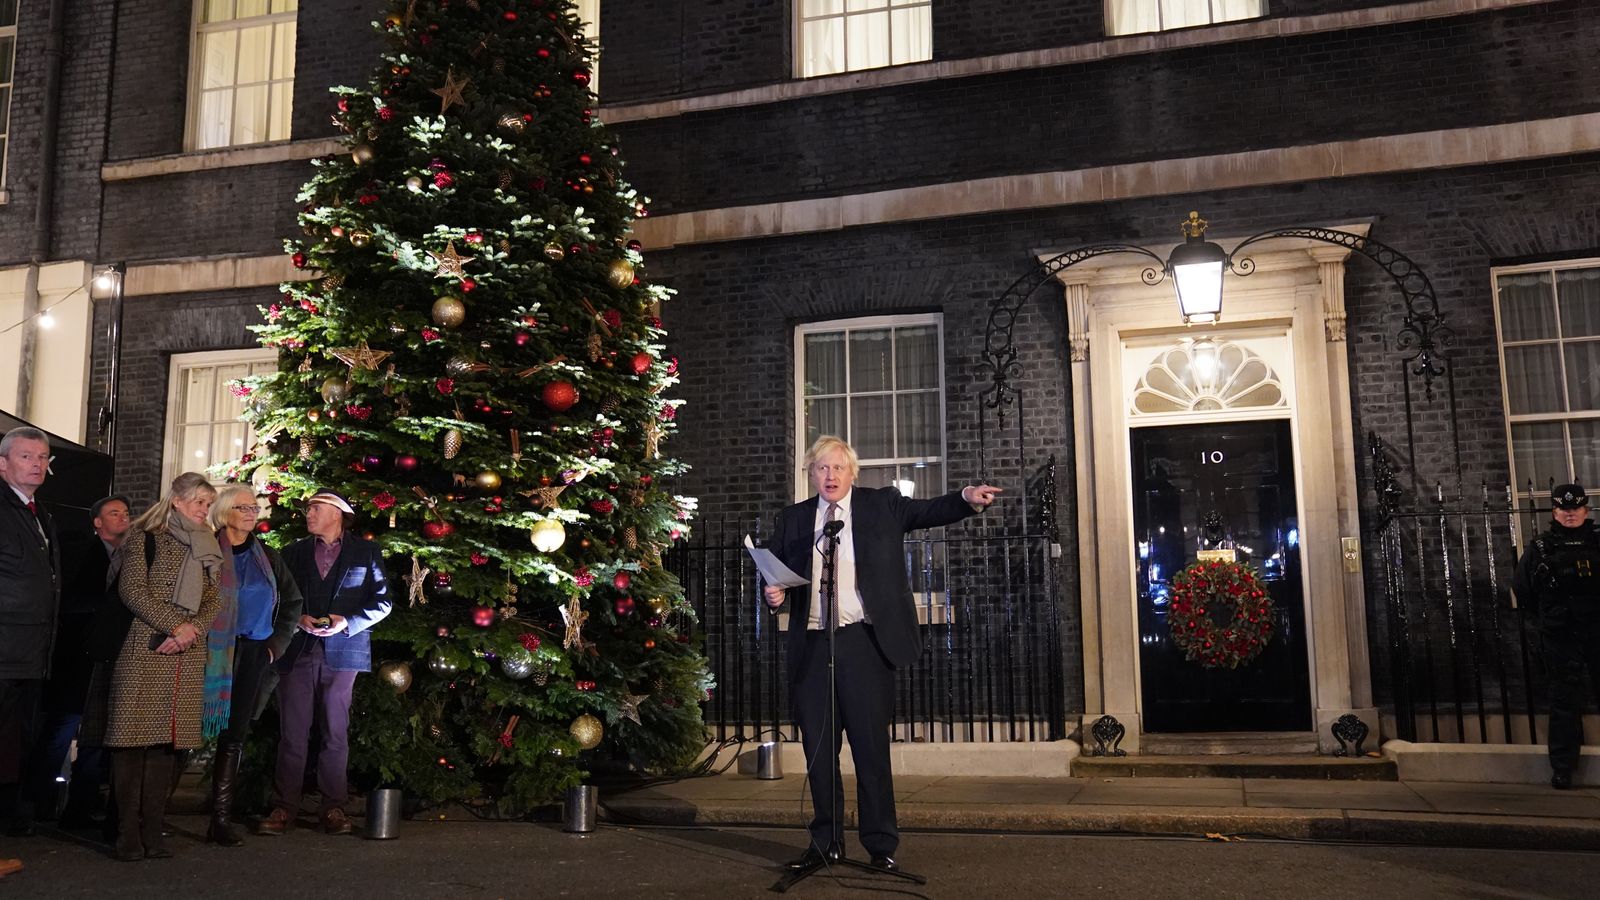 COVID-19: Nomor 10 mengonfirmasi pesta Natal akan diadakan di Whitehall saat menteri mendesak warga Inggris untuk ‘tetap tenang dan melanjutkan’ |  Berita Politik